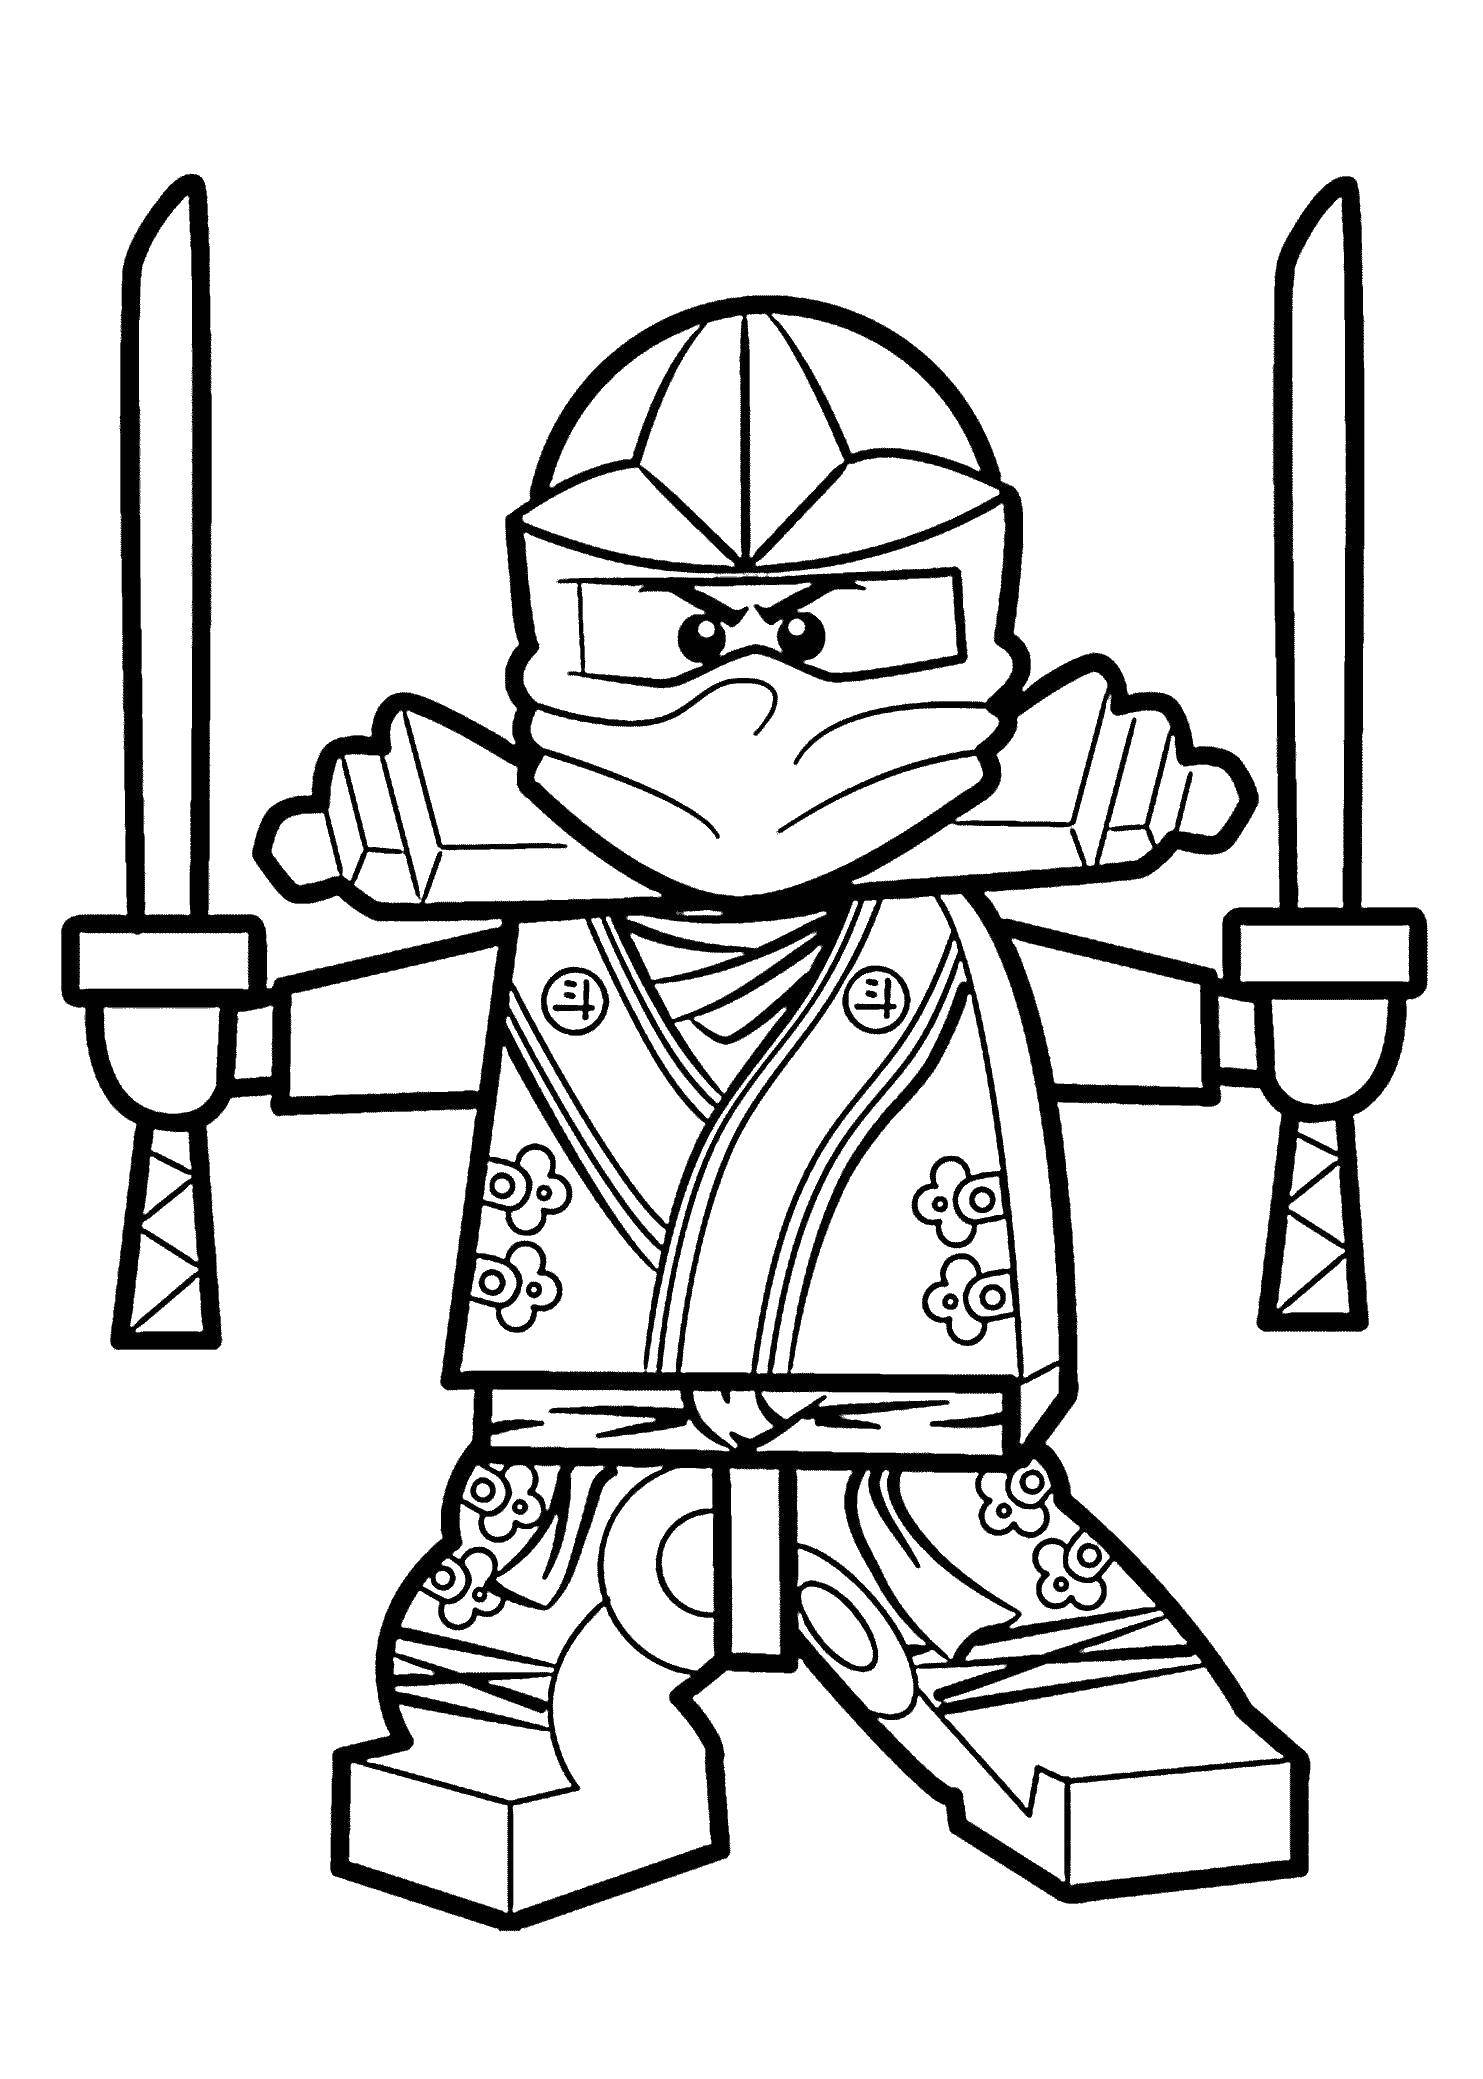 Название: Раскраска Ниндзя из конструктора лего с мечами. Категория: ниндзя. Теги: Ниндзя, конструктор, Лего.